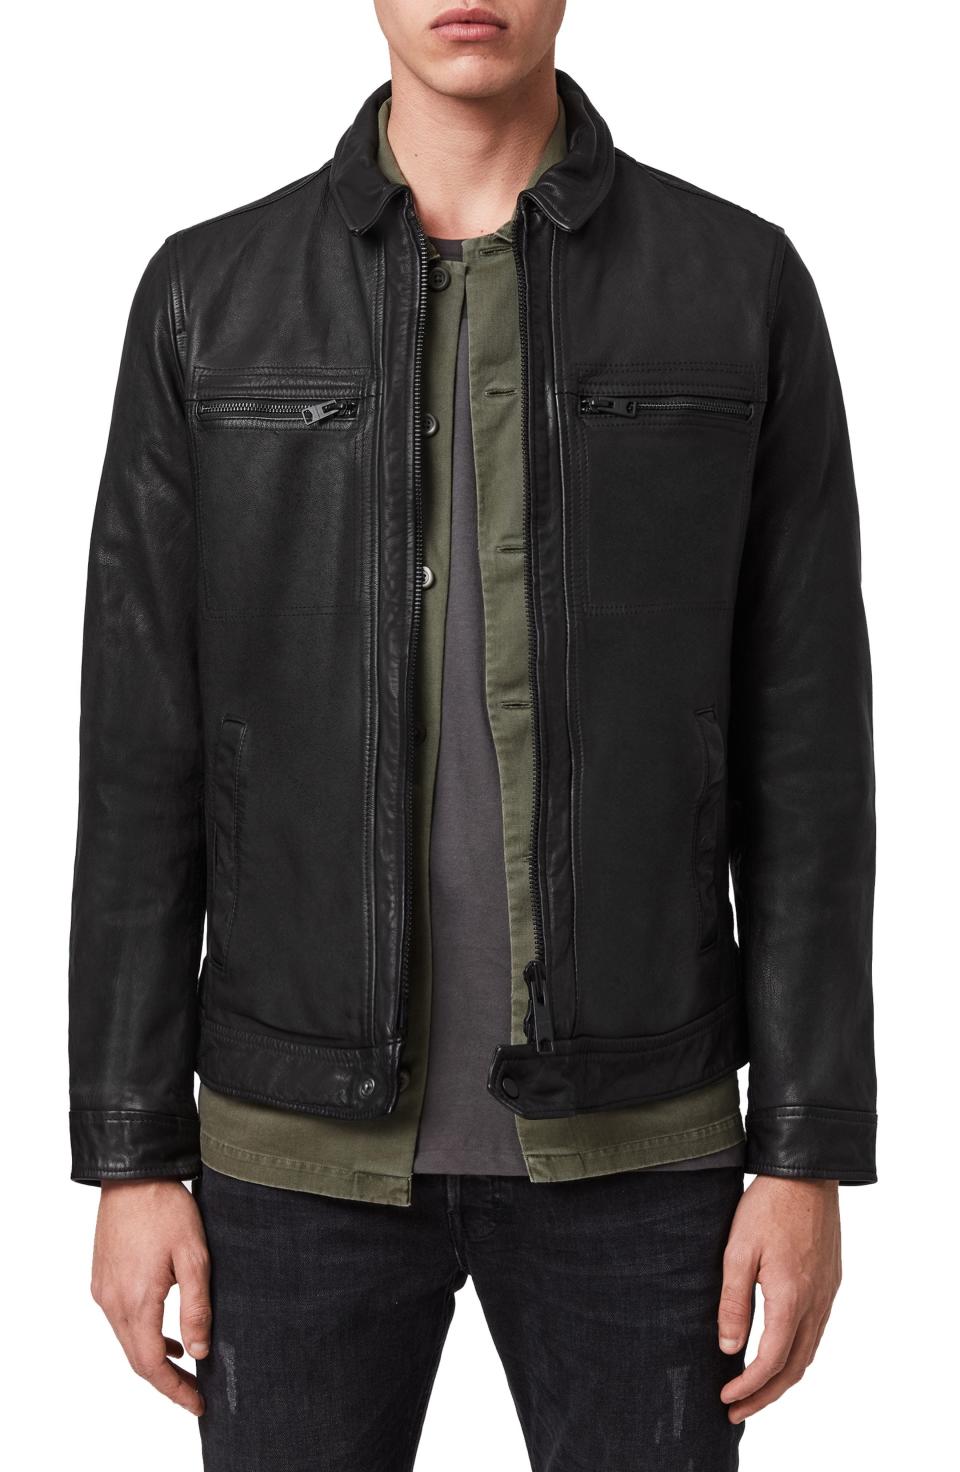 Lark Leather Jacket